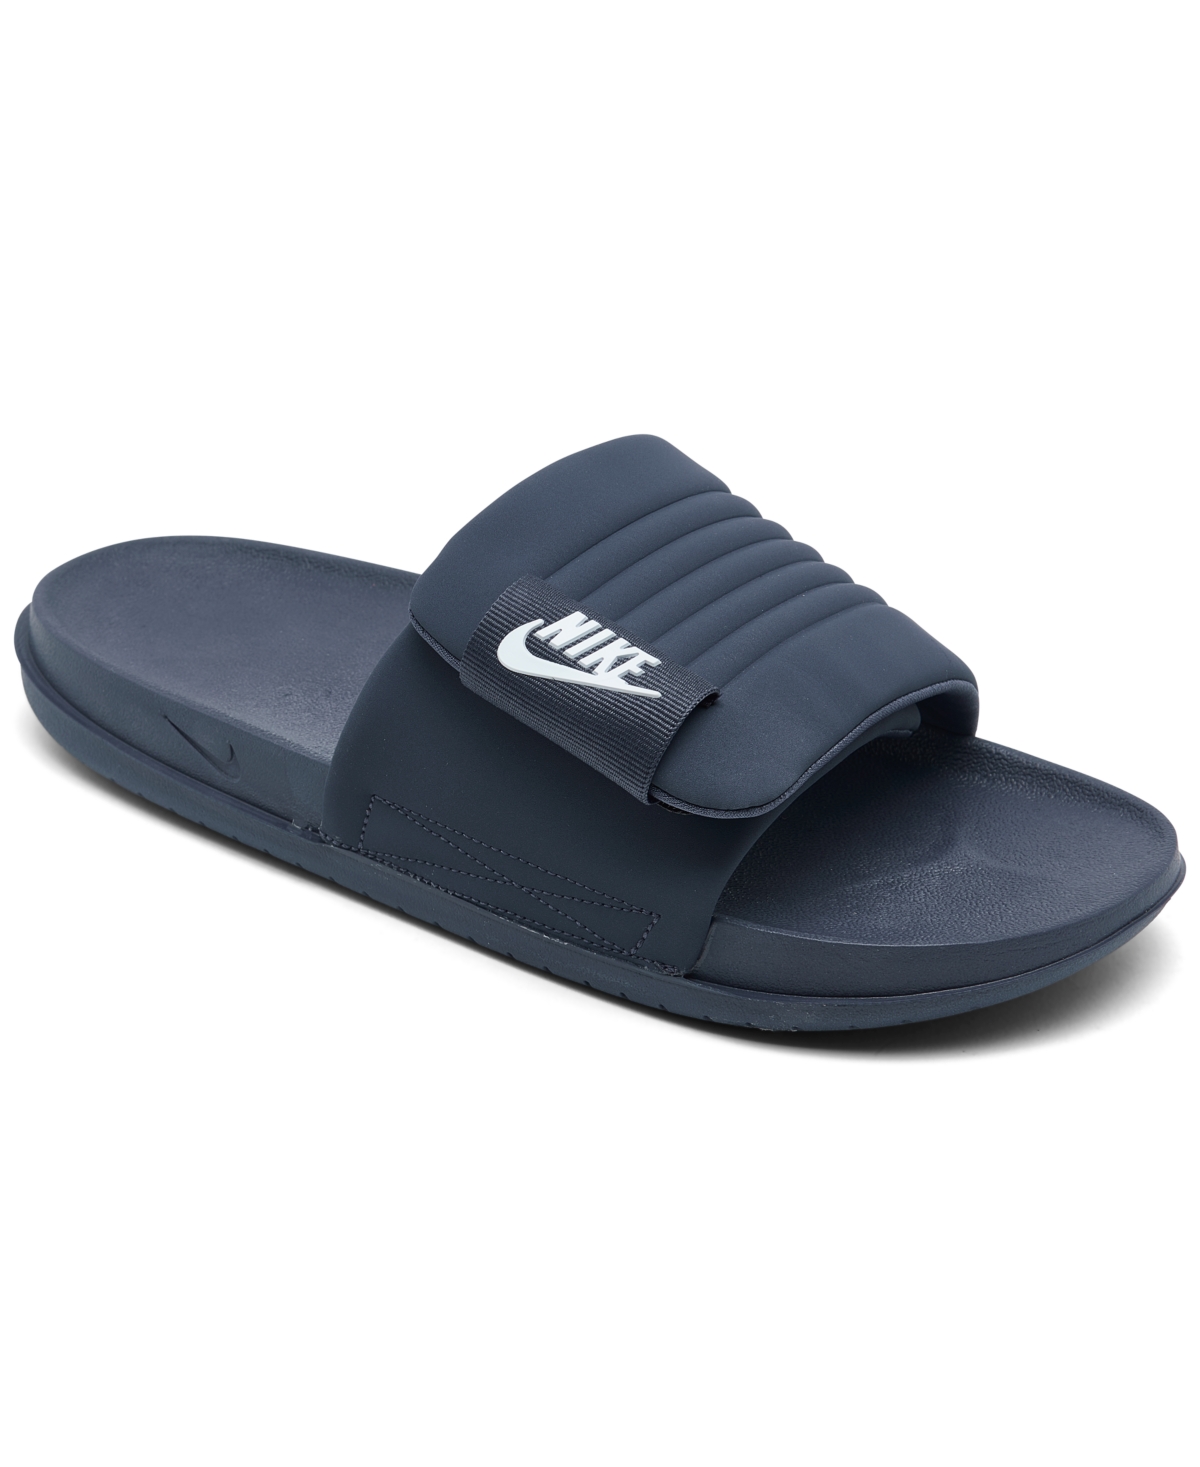 Men's Offcourt Adjust Slide Sandals from Finish Line - Thunder Blue, White